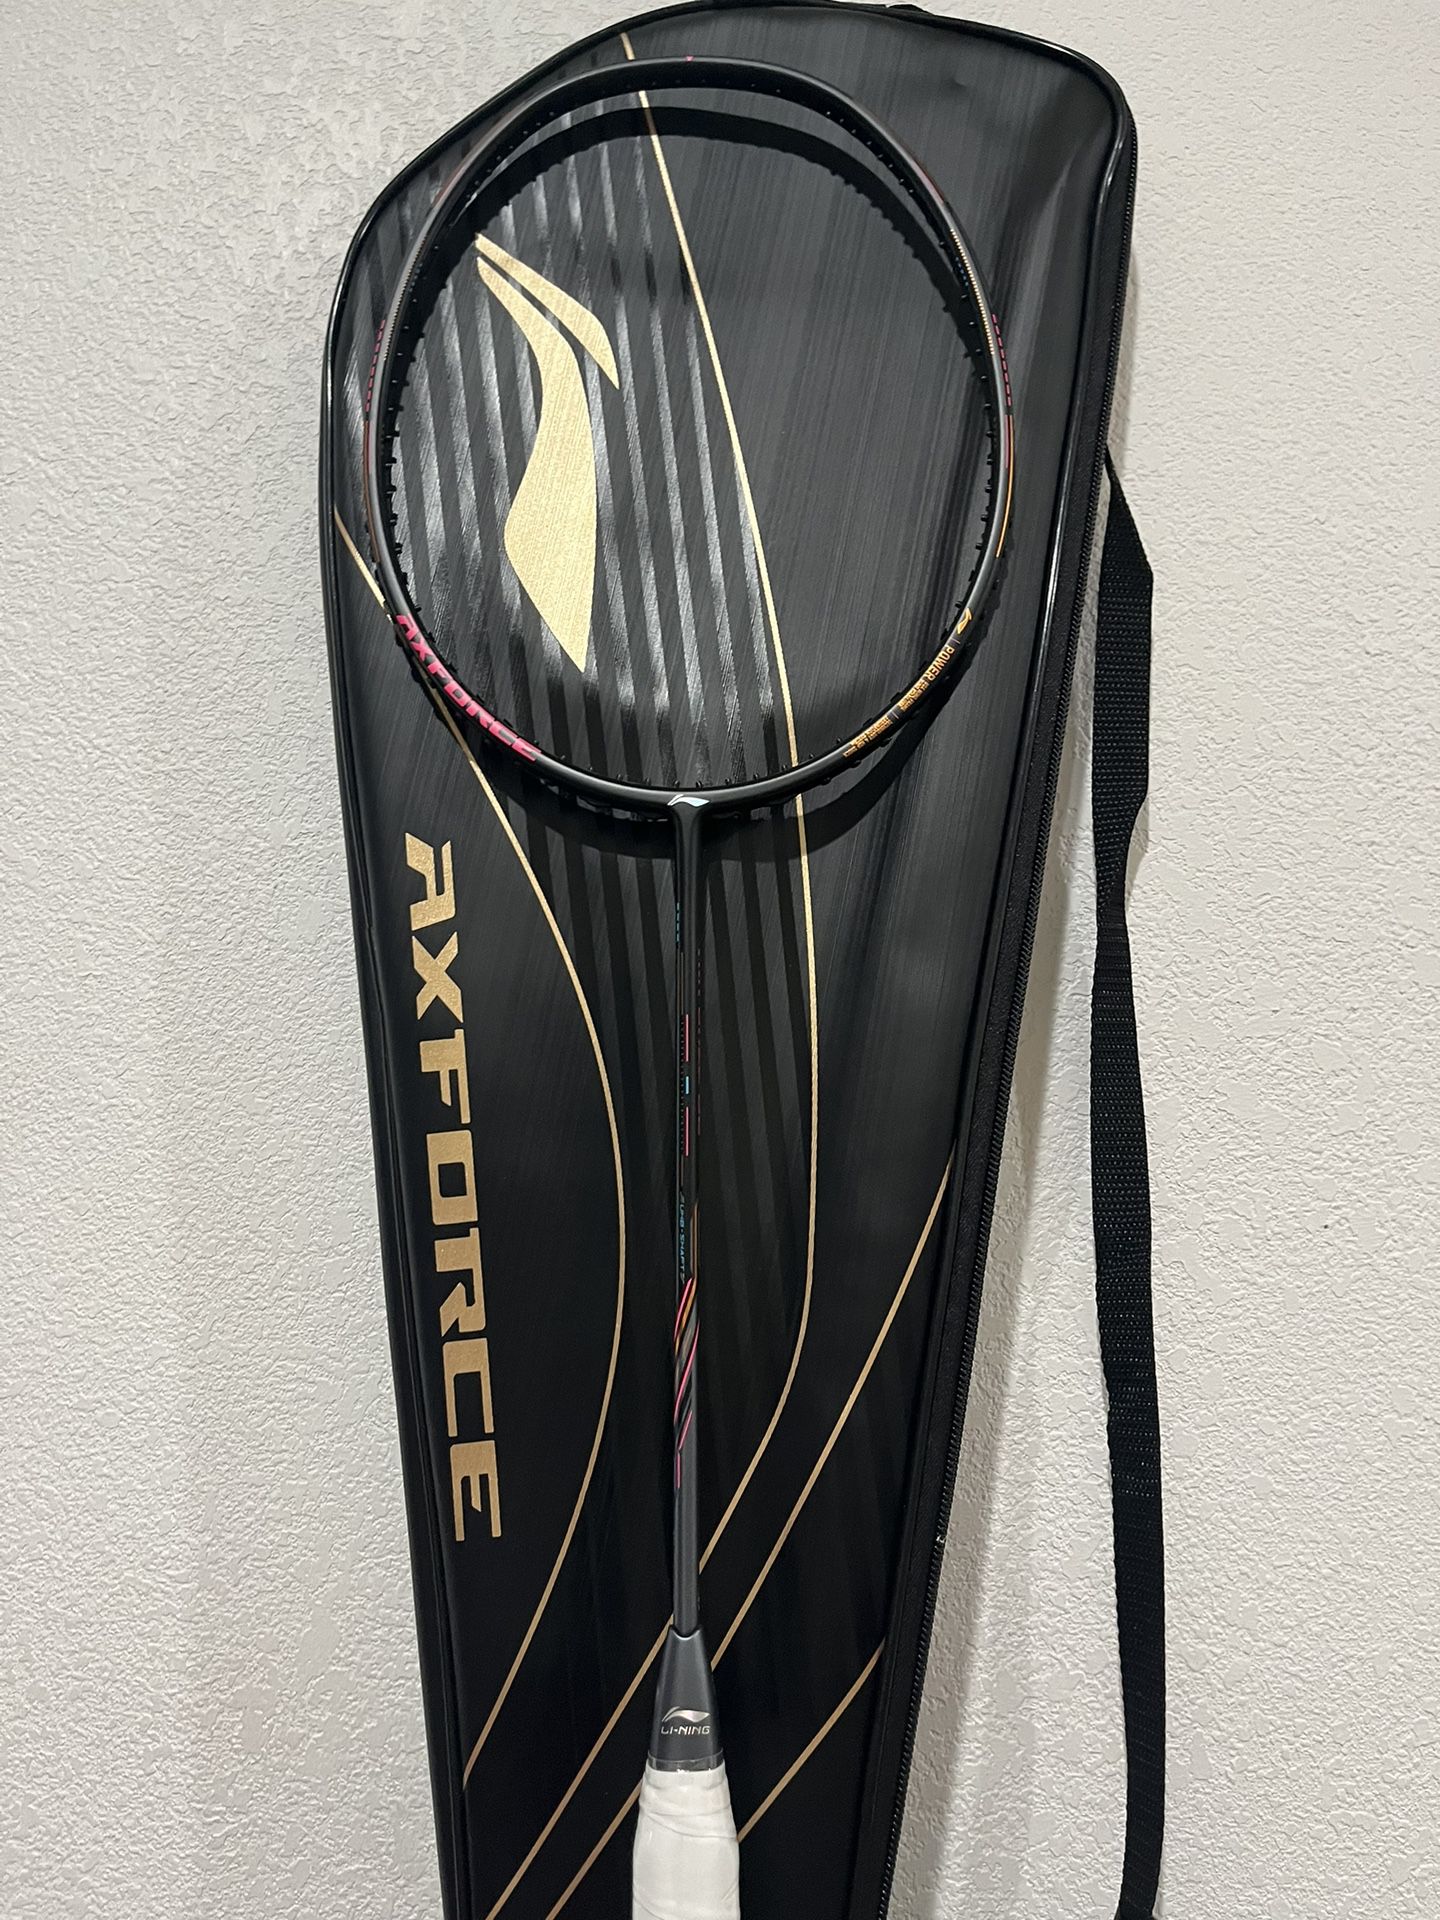 Lining Axforce 80 4Ug5 Badminton Racket Brand New